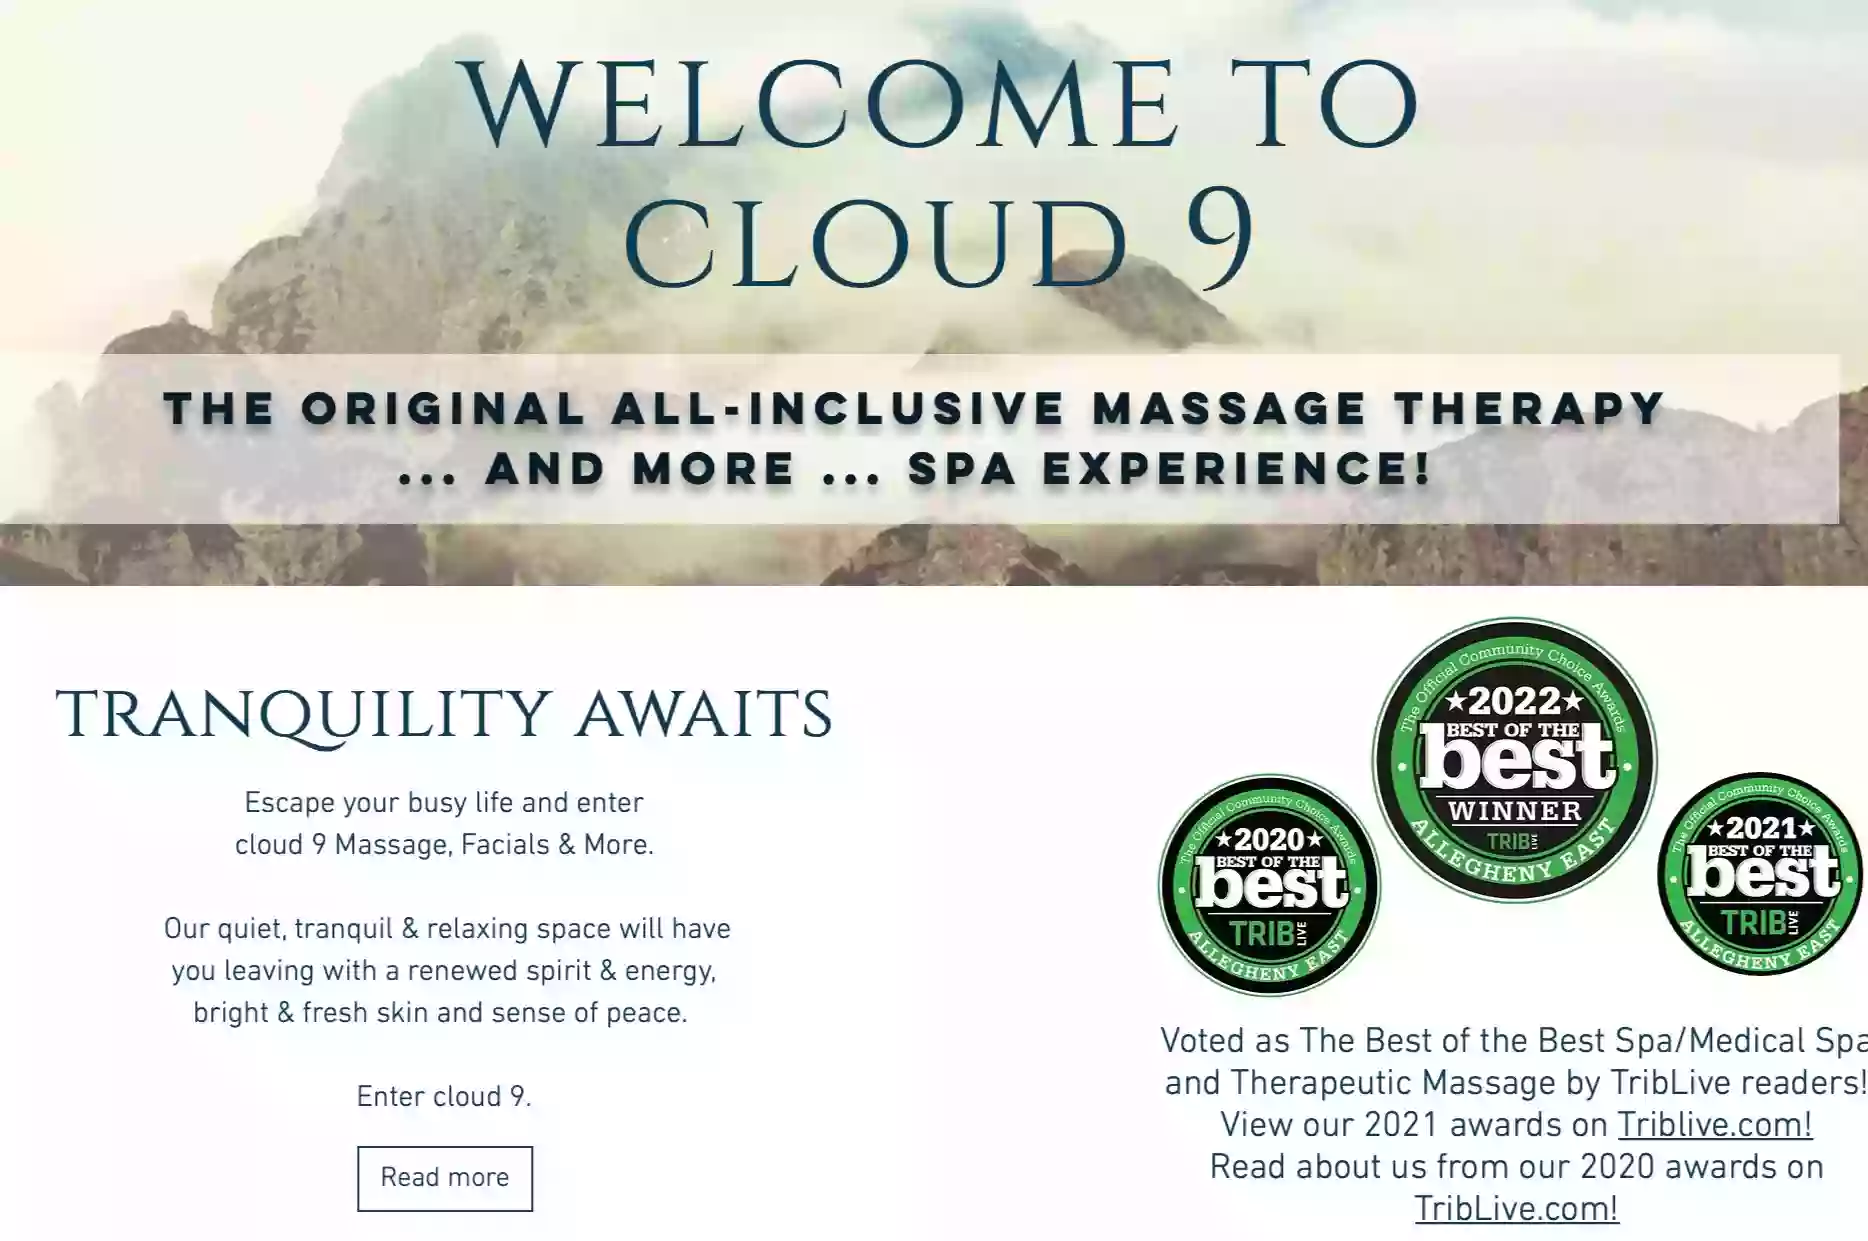 Cloud 9 Massage, Facials & More